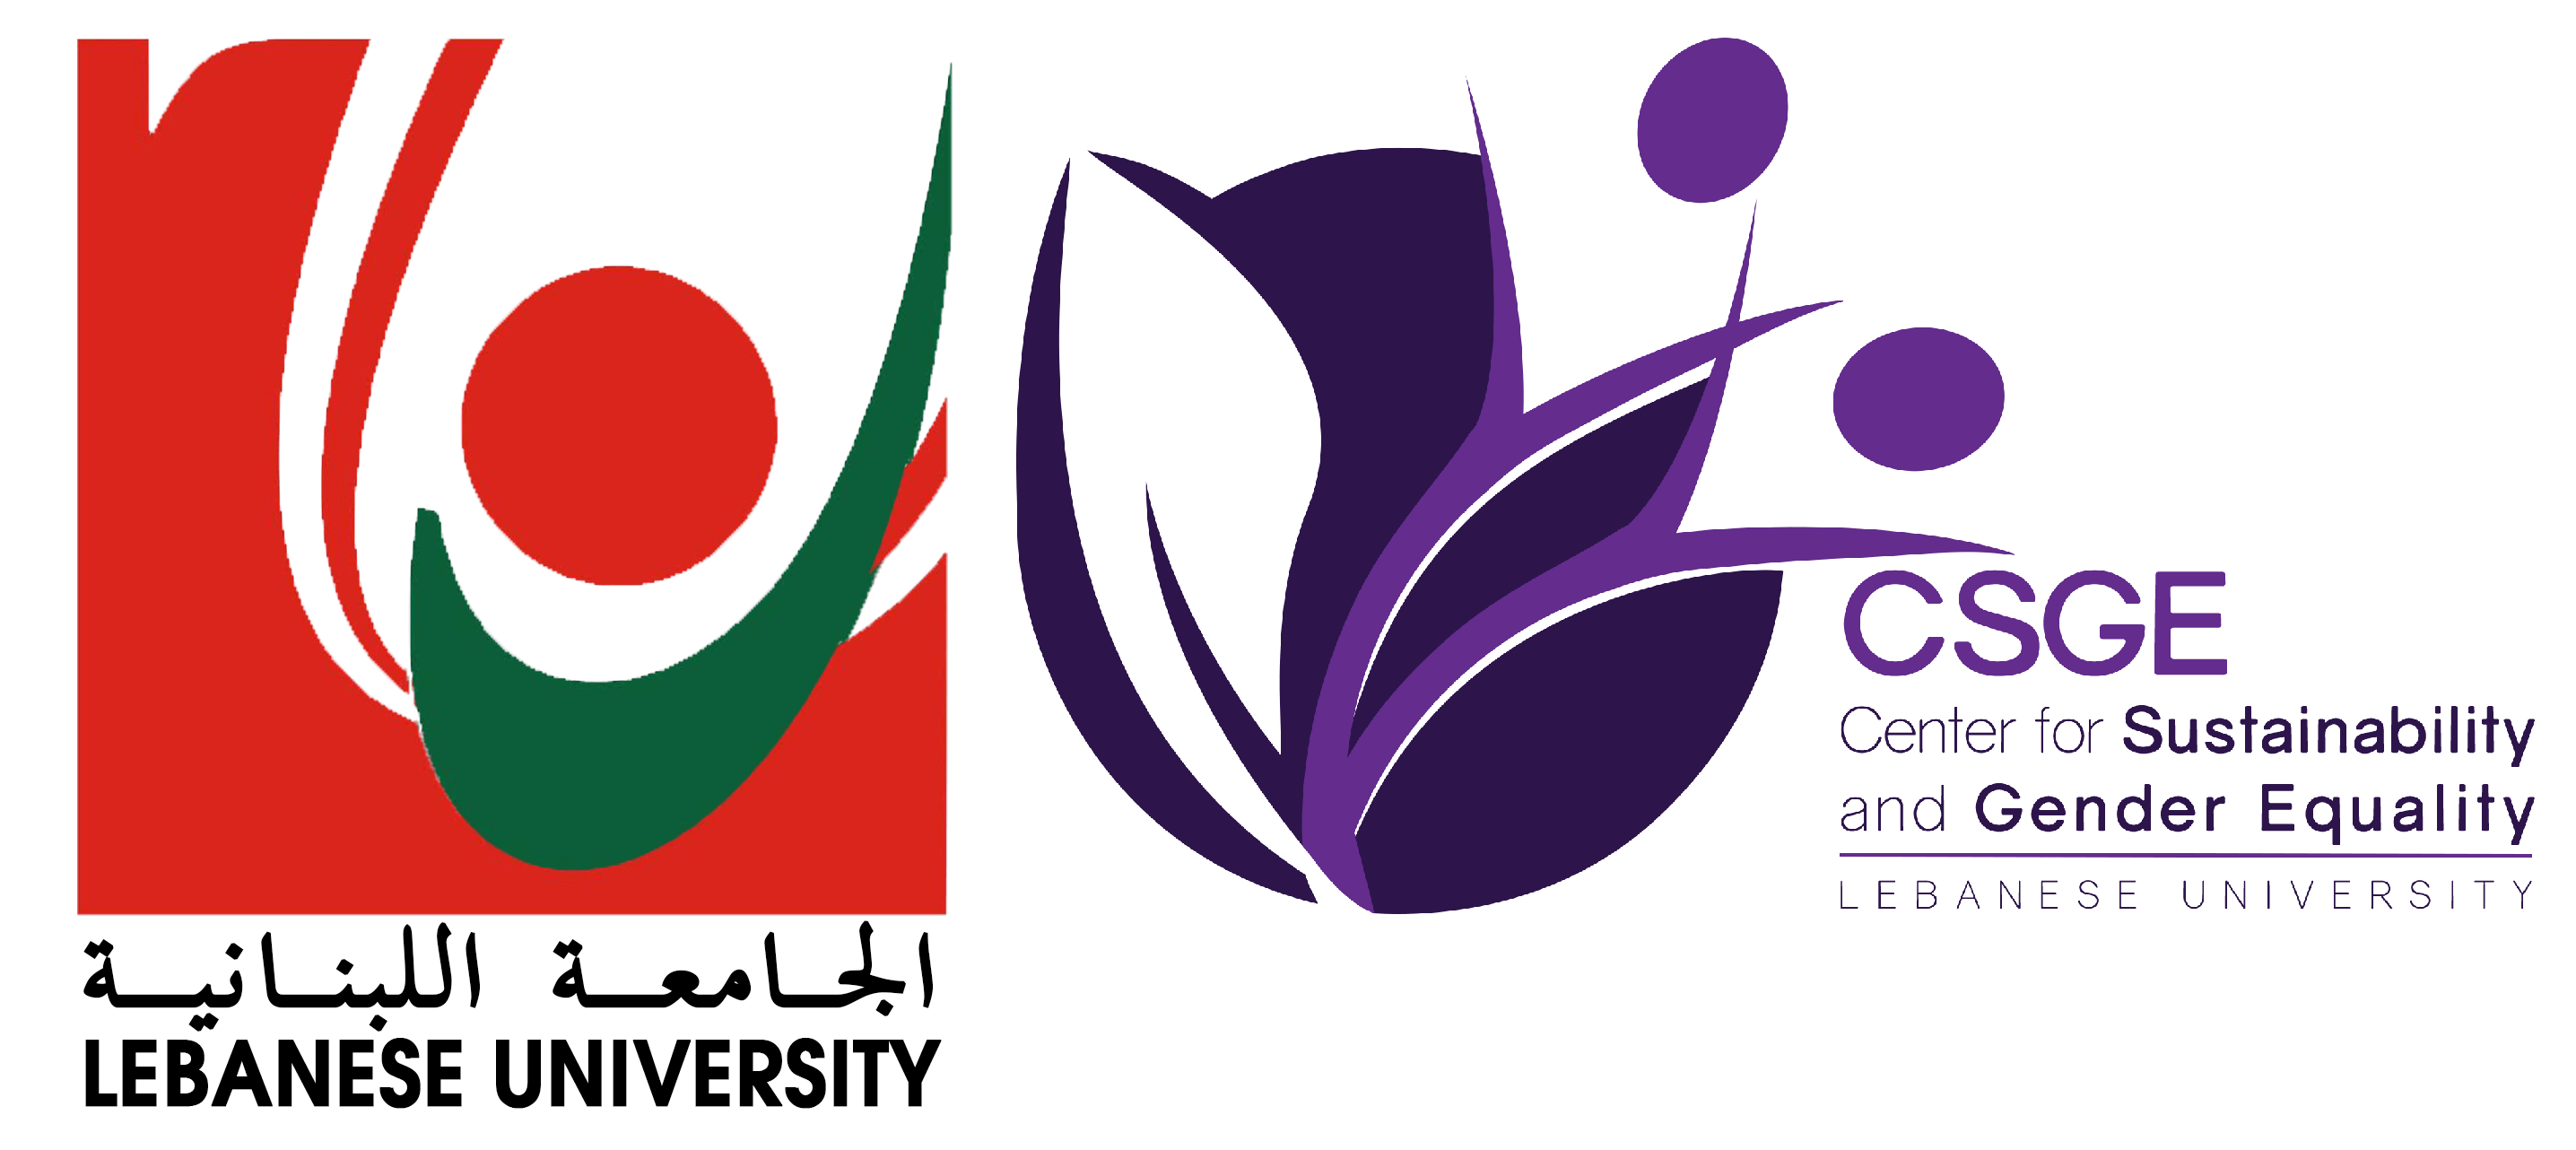 Centre pour la Durabilité et l’Egalité des Genres de l’Université Libanaise